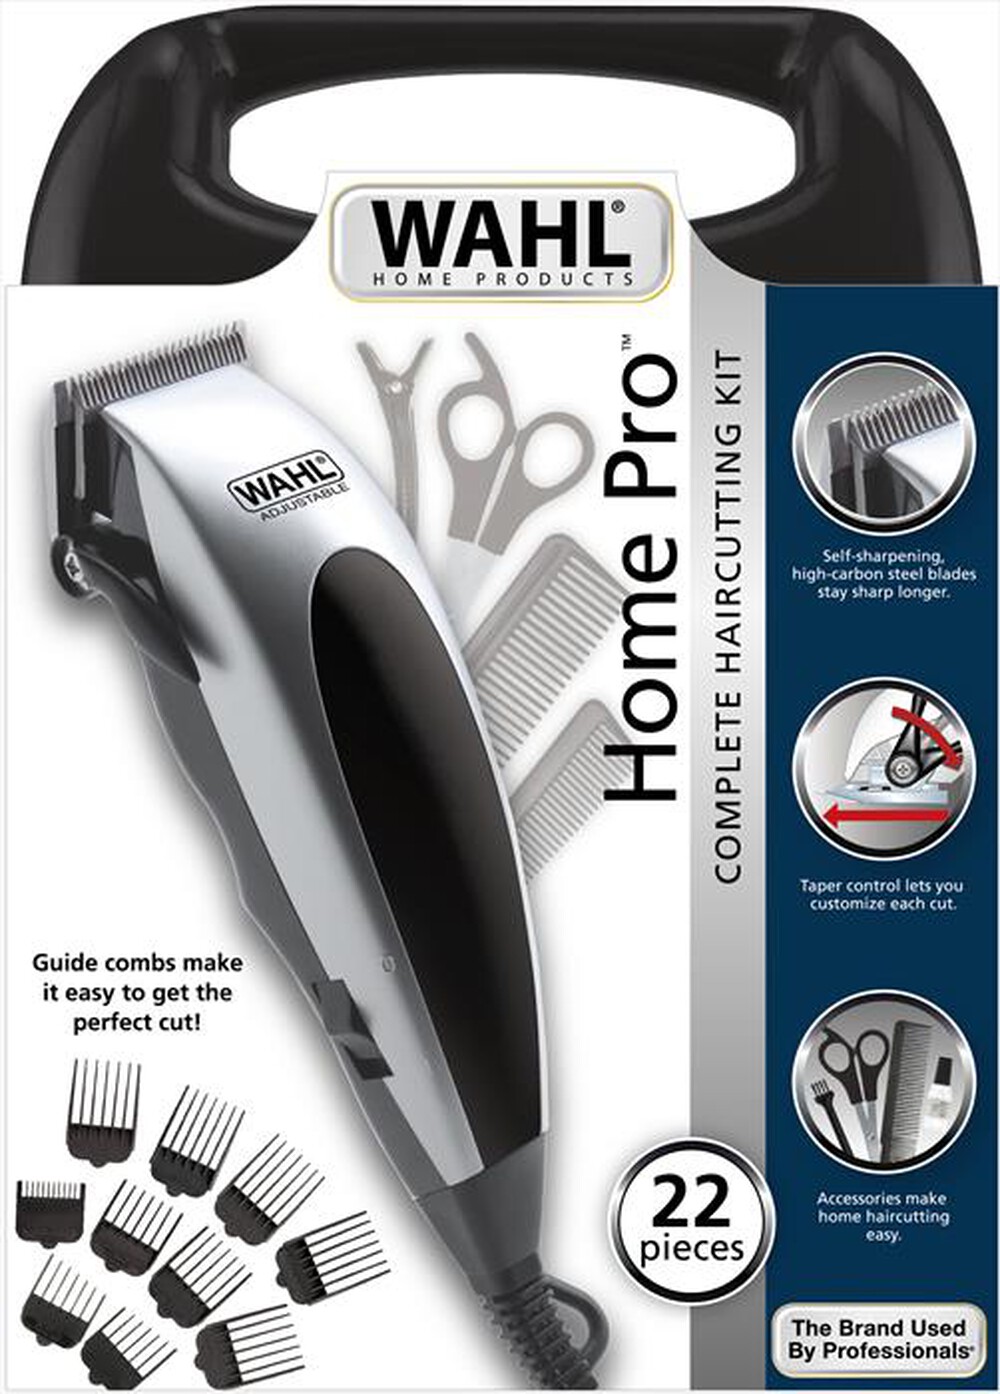 "WAHL - HomePro tagliacapelli a filo"